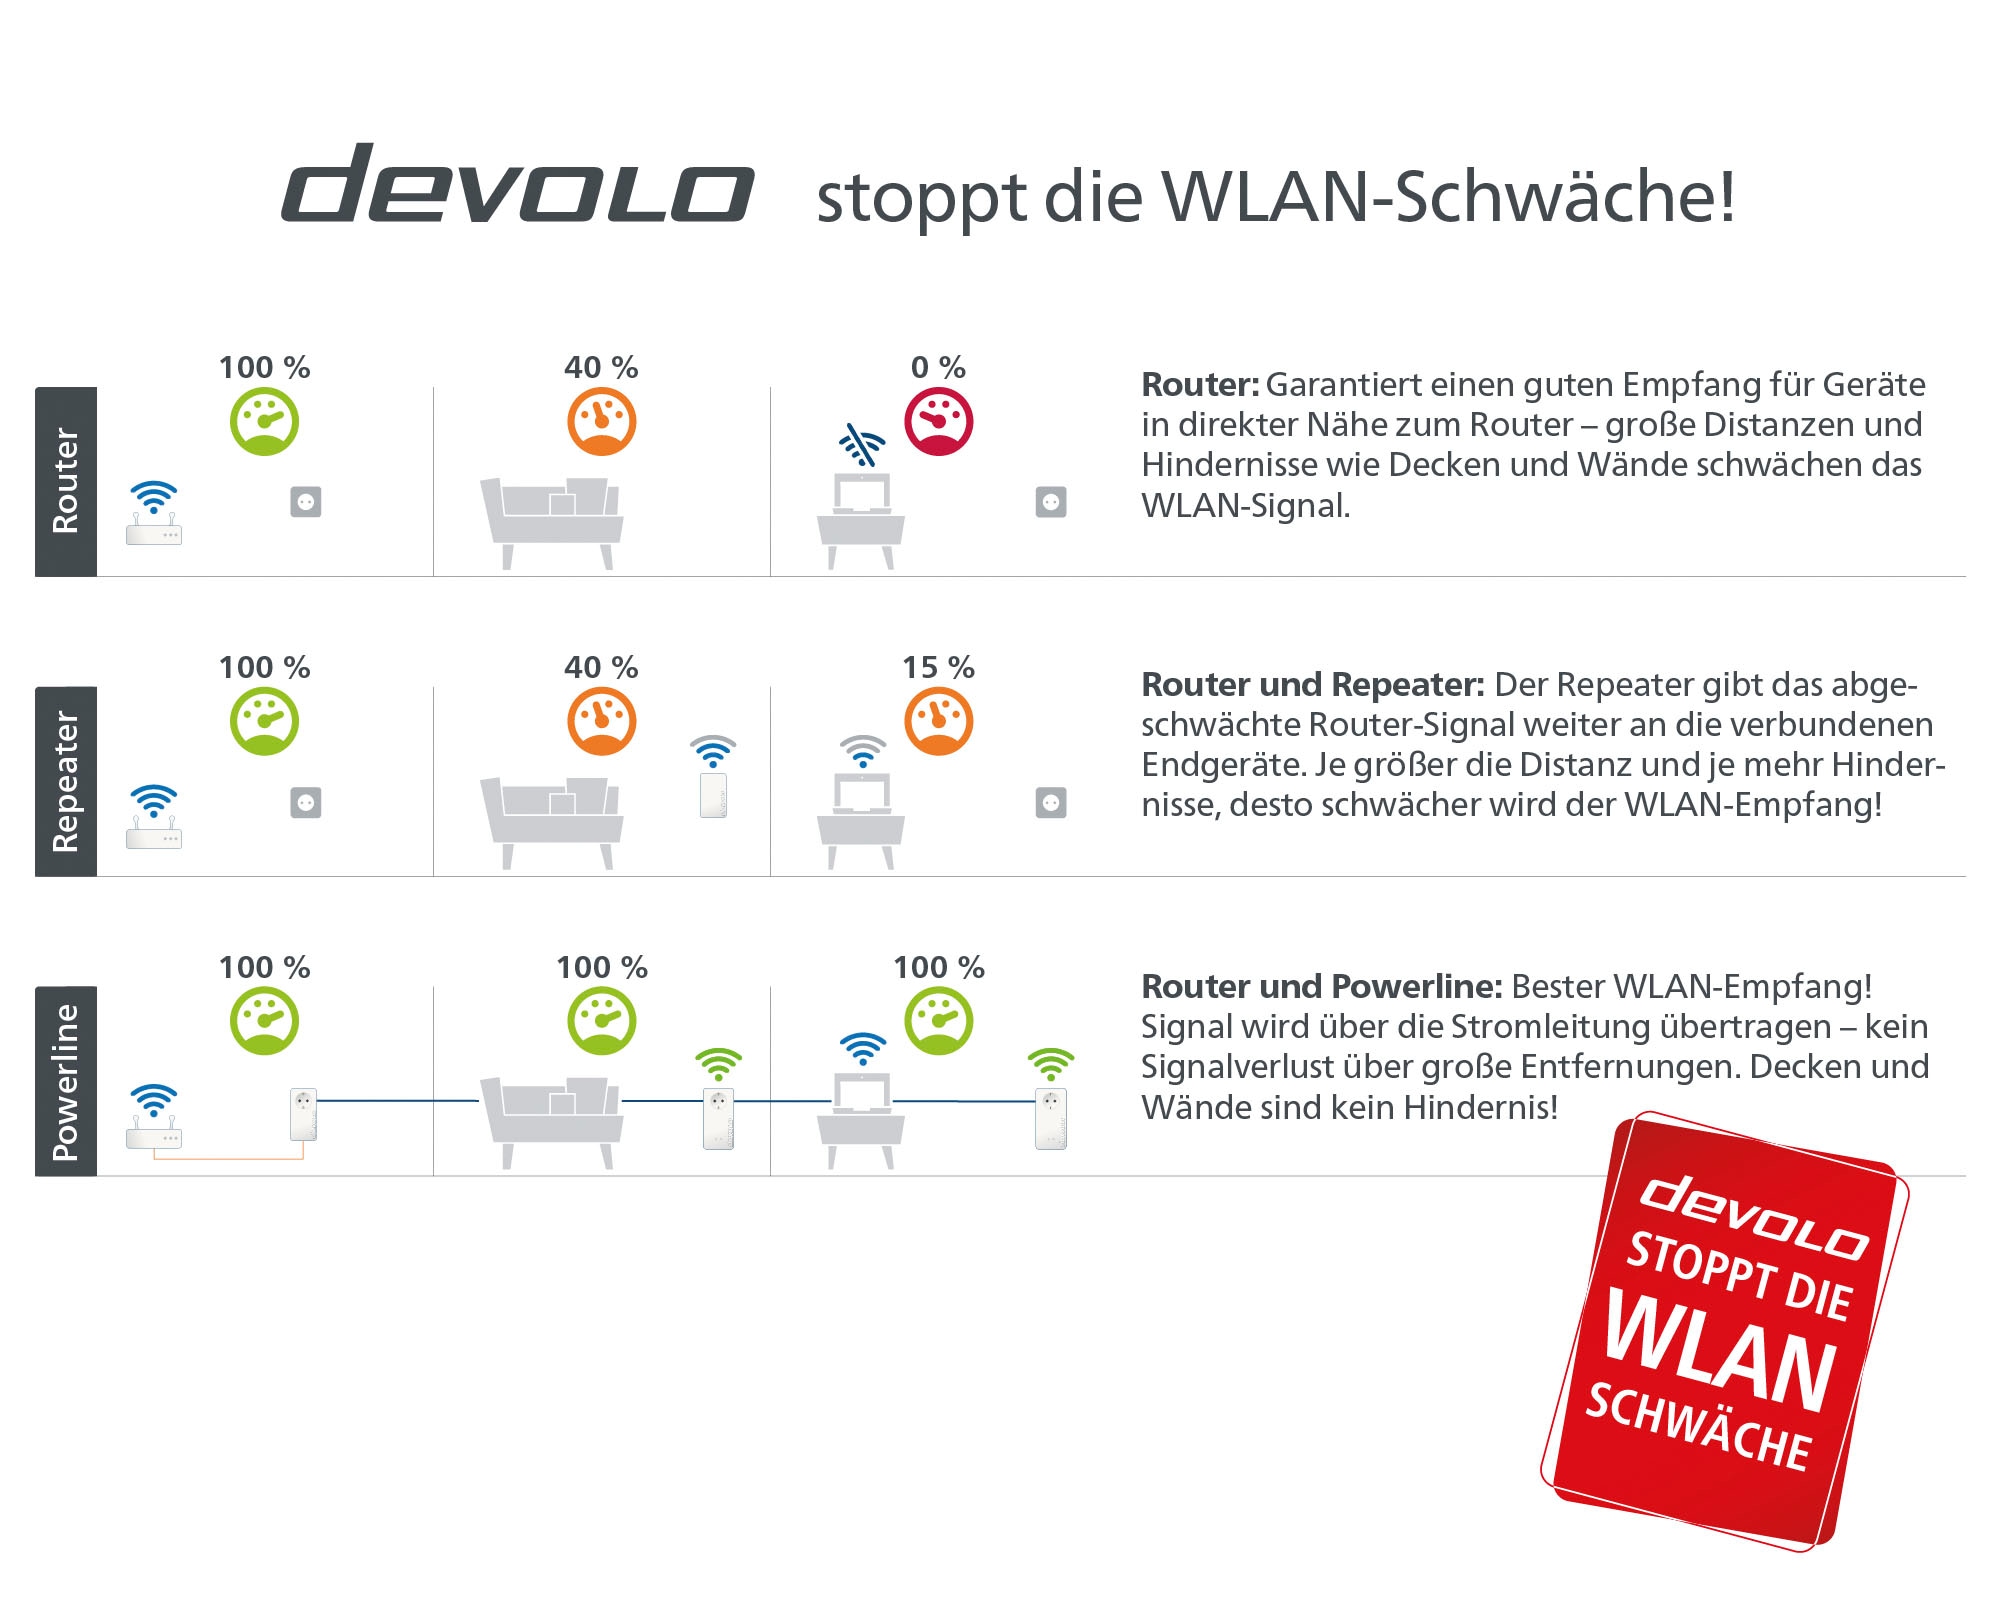 DEVOLO WLAN-Router »Magic 1 WiFi ac Multiroom Kit (1200Mbit, 5x LAN, Mesh)«